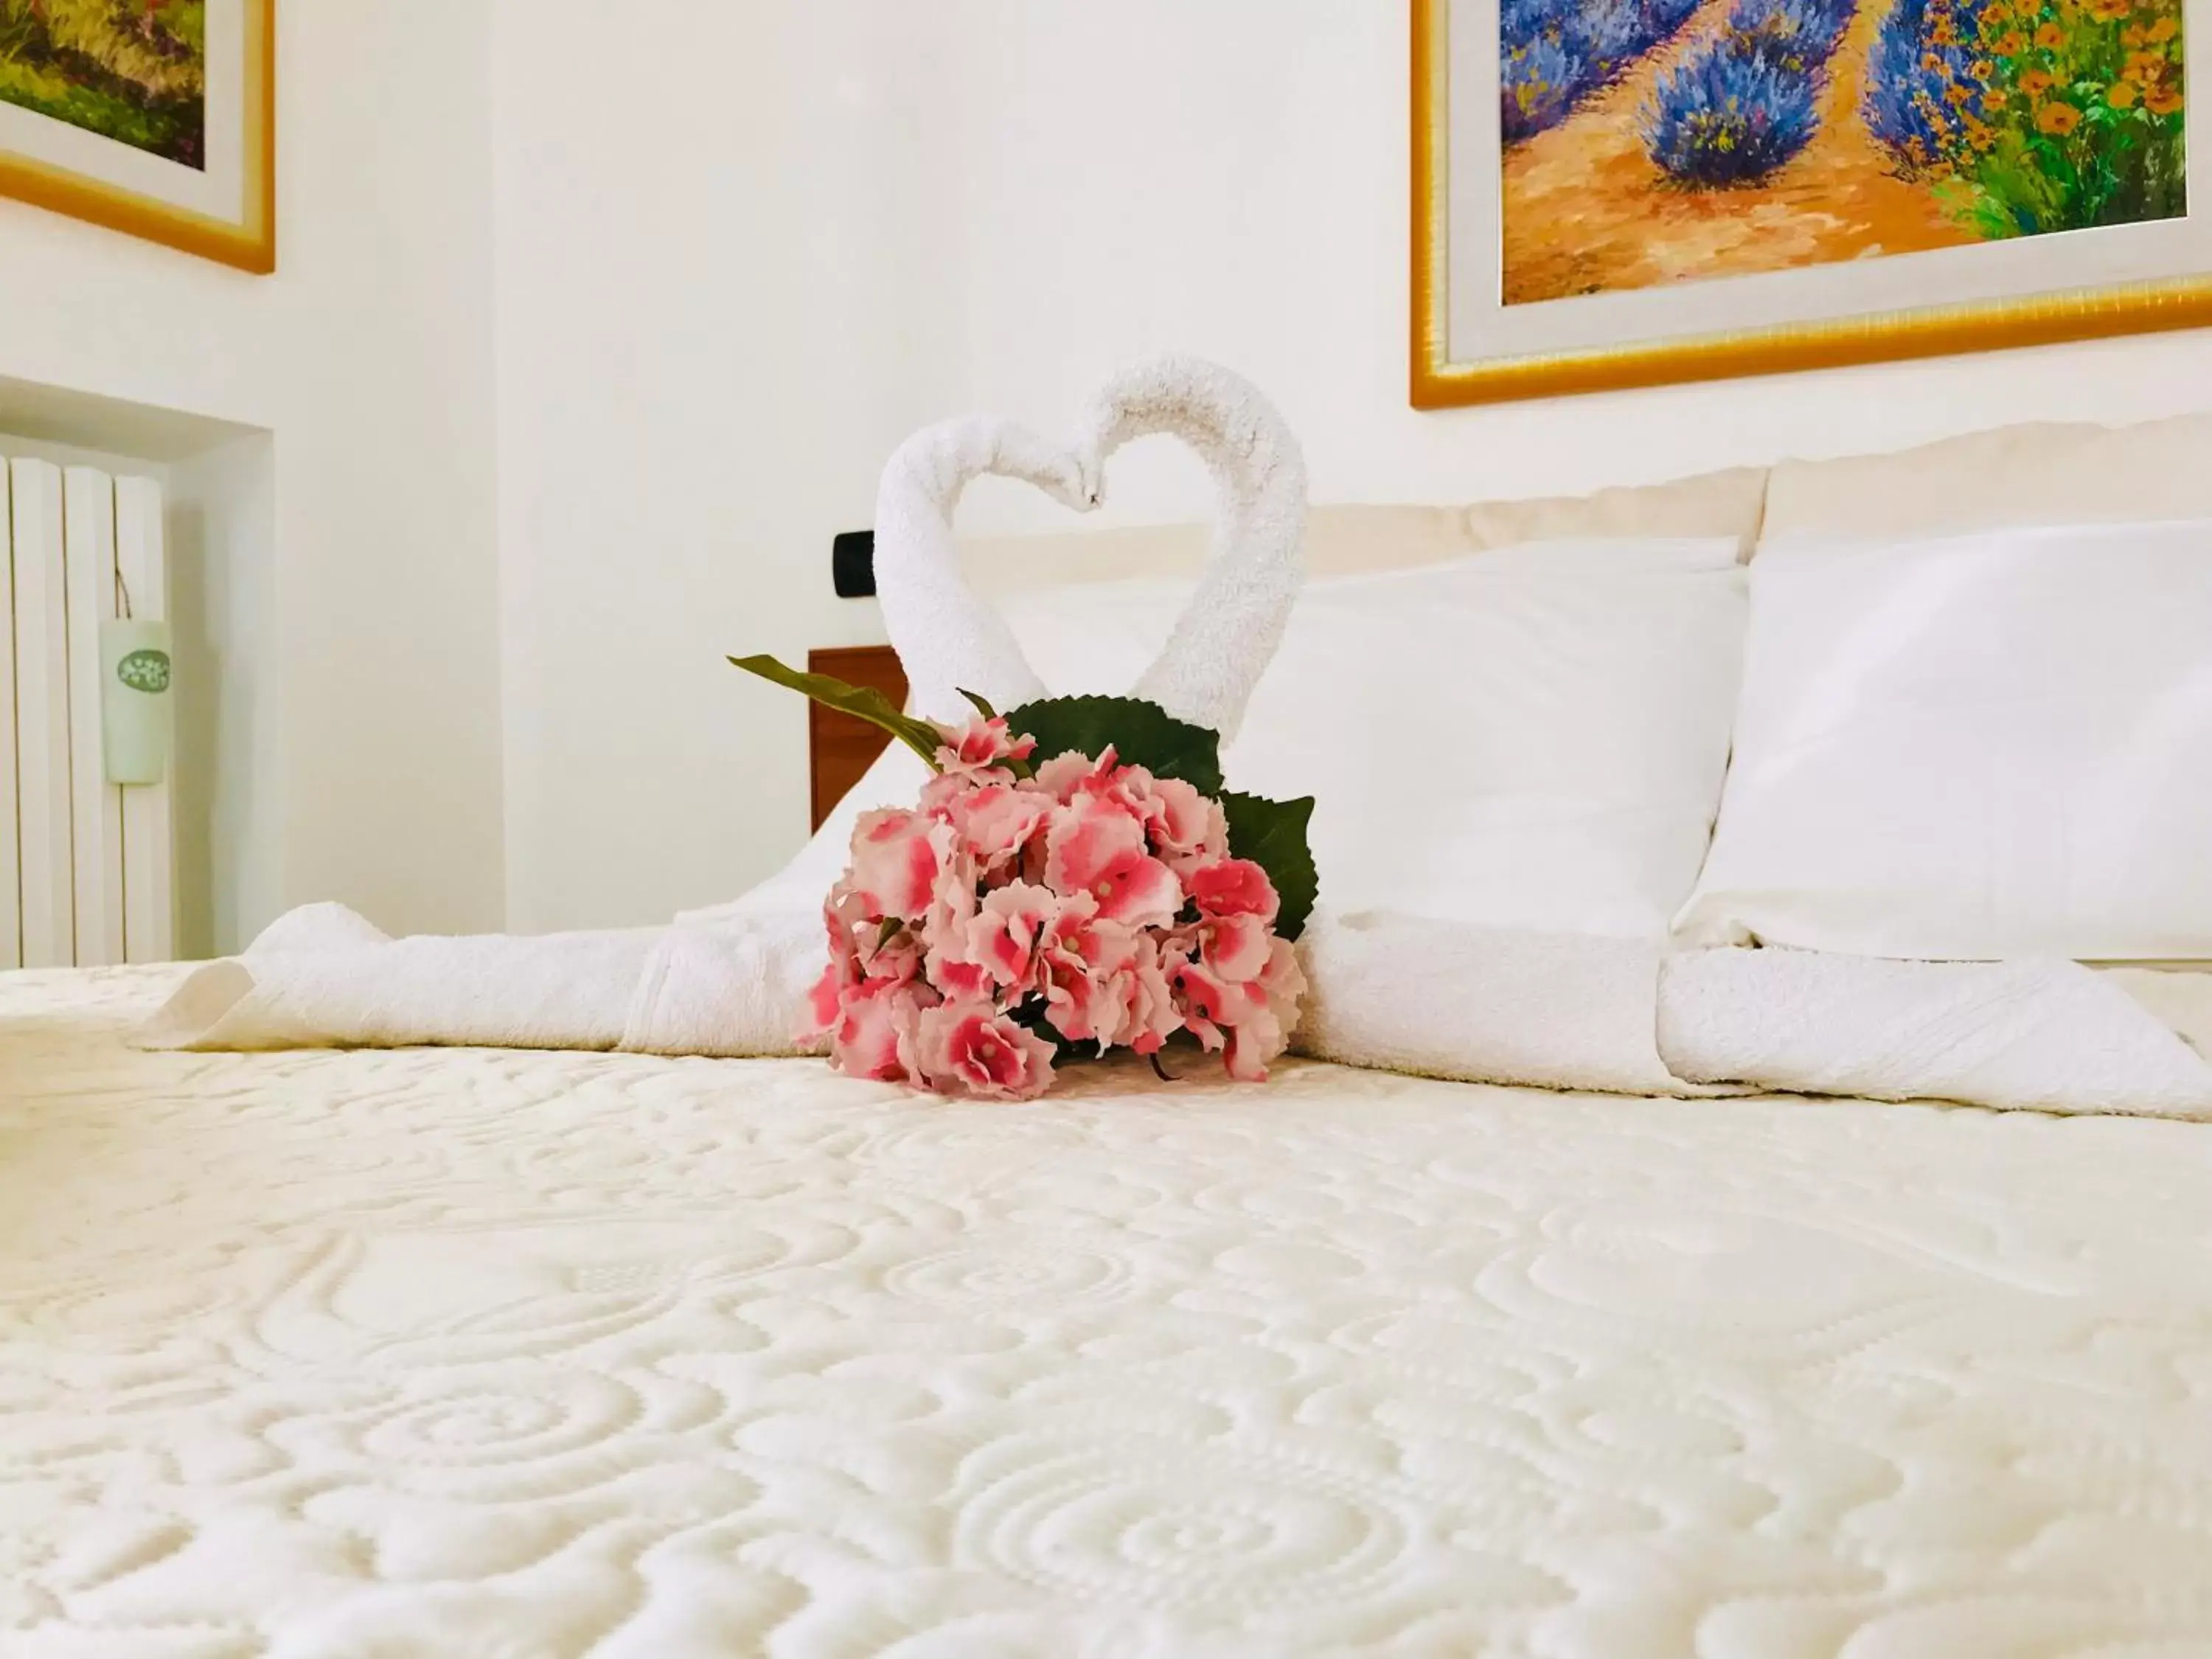 Decorative detail, Bed in Villa Aurora B&B